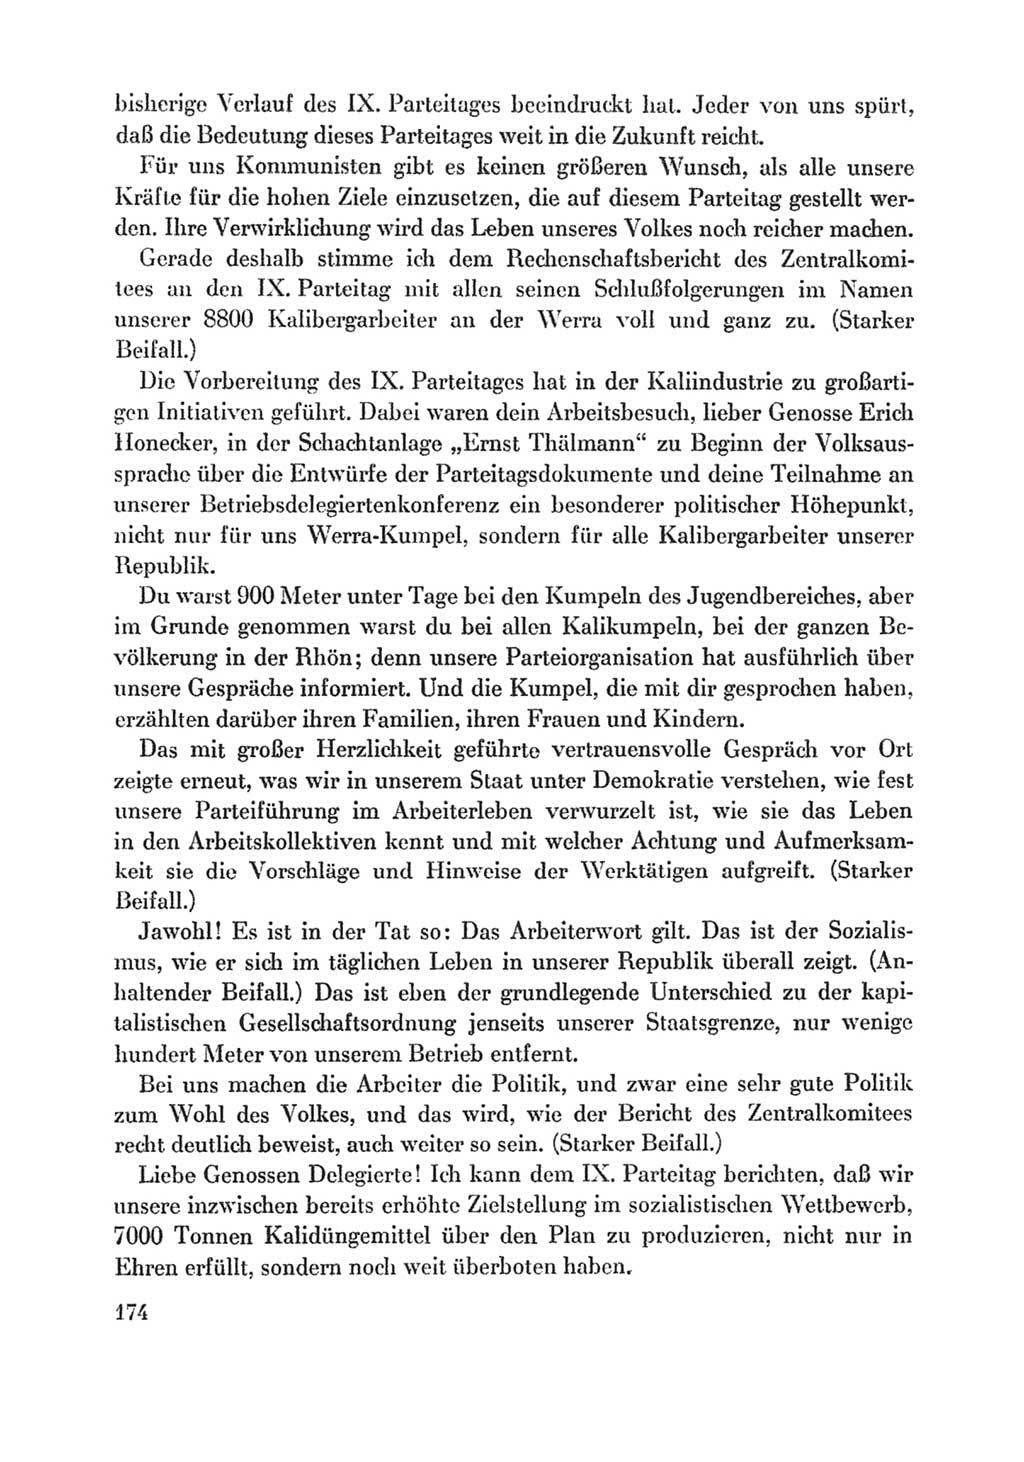 Protokoll der Verhandlungen des Ⅸ. Parteitages der Sozialistischen Einheitspartei Deutschlands (SED) [Deutsche Demokratische Republik (DDR)] 1976, Band 1, Seite 174 (Prot. Verh. Ⅸ. PT SED DDR 1976, Bd. 1, S. 174)